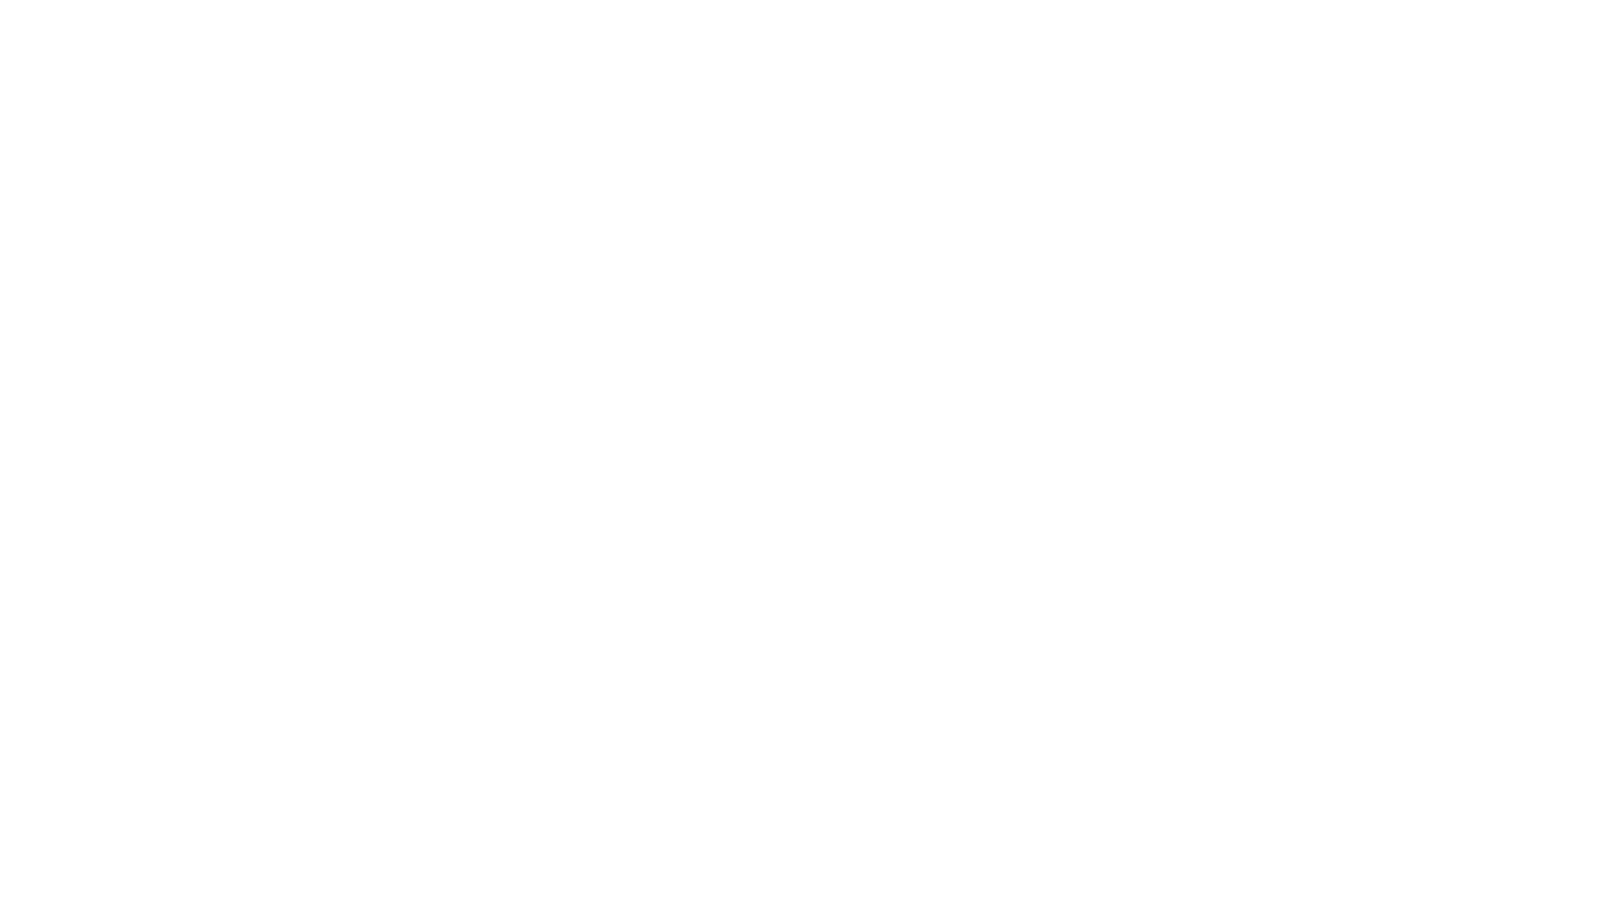 🇫🇷 Impro avec la belle Charvel Pro-Mod HSH modèle 2021 et ses micros Seymour Duncan sur “Soulful Bluesy Groove in Cm” de chez Elevated Jam Tracks (Full Digital Discography (Part 3). 
Pour le son, le Plexi 50W 6CA7 du FM3. Firmware 5.0 beta 1. 😉🎸

🇺🇸 Improv with the beautiful Charvel Pro-Mod HSH model 2021 and its Seymour Duncan pickups on "Soulful Bluesy Groove in Cm" from Elevated Jam Tracks (Full Digital Discography (Part 3). 
For the sound, the Plexi 50W 6CA7 model from the FM3. Firmware 5.0 beta 1. 😉🎸

Preset FM3 / FM9 / Axe-Fx III :  https://axechange.fractalaudio.com/detail.php?preset=9406  

Elevated Jam Tracks : https://elevatedjamtracks.bandcamp.com  

N'oubliez pas de vous abonner ! Don't forget to subscribe 😉  
https://www.youtube.com/channel/UCaDOB3tLJVMi8zoiYF9hjrQ/?sub_confirmation=1  

➢ Web Site: https://nicolasdesmarest.com 
➢ Facebook: https://www.facebook.com/ndesmarest 
➢ Instagram: https://www.instagram.com/nicolas.desmarest 
➢ Twitter: https://twitter.com/ndesmarest 
➢ YouTube: https://www.youtube.com/user/NDESMAREST 
 
#elevatedjamtracks #charvelhsh #fm3